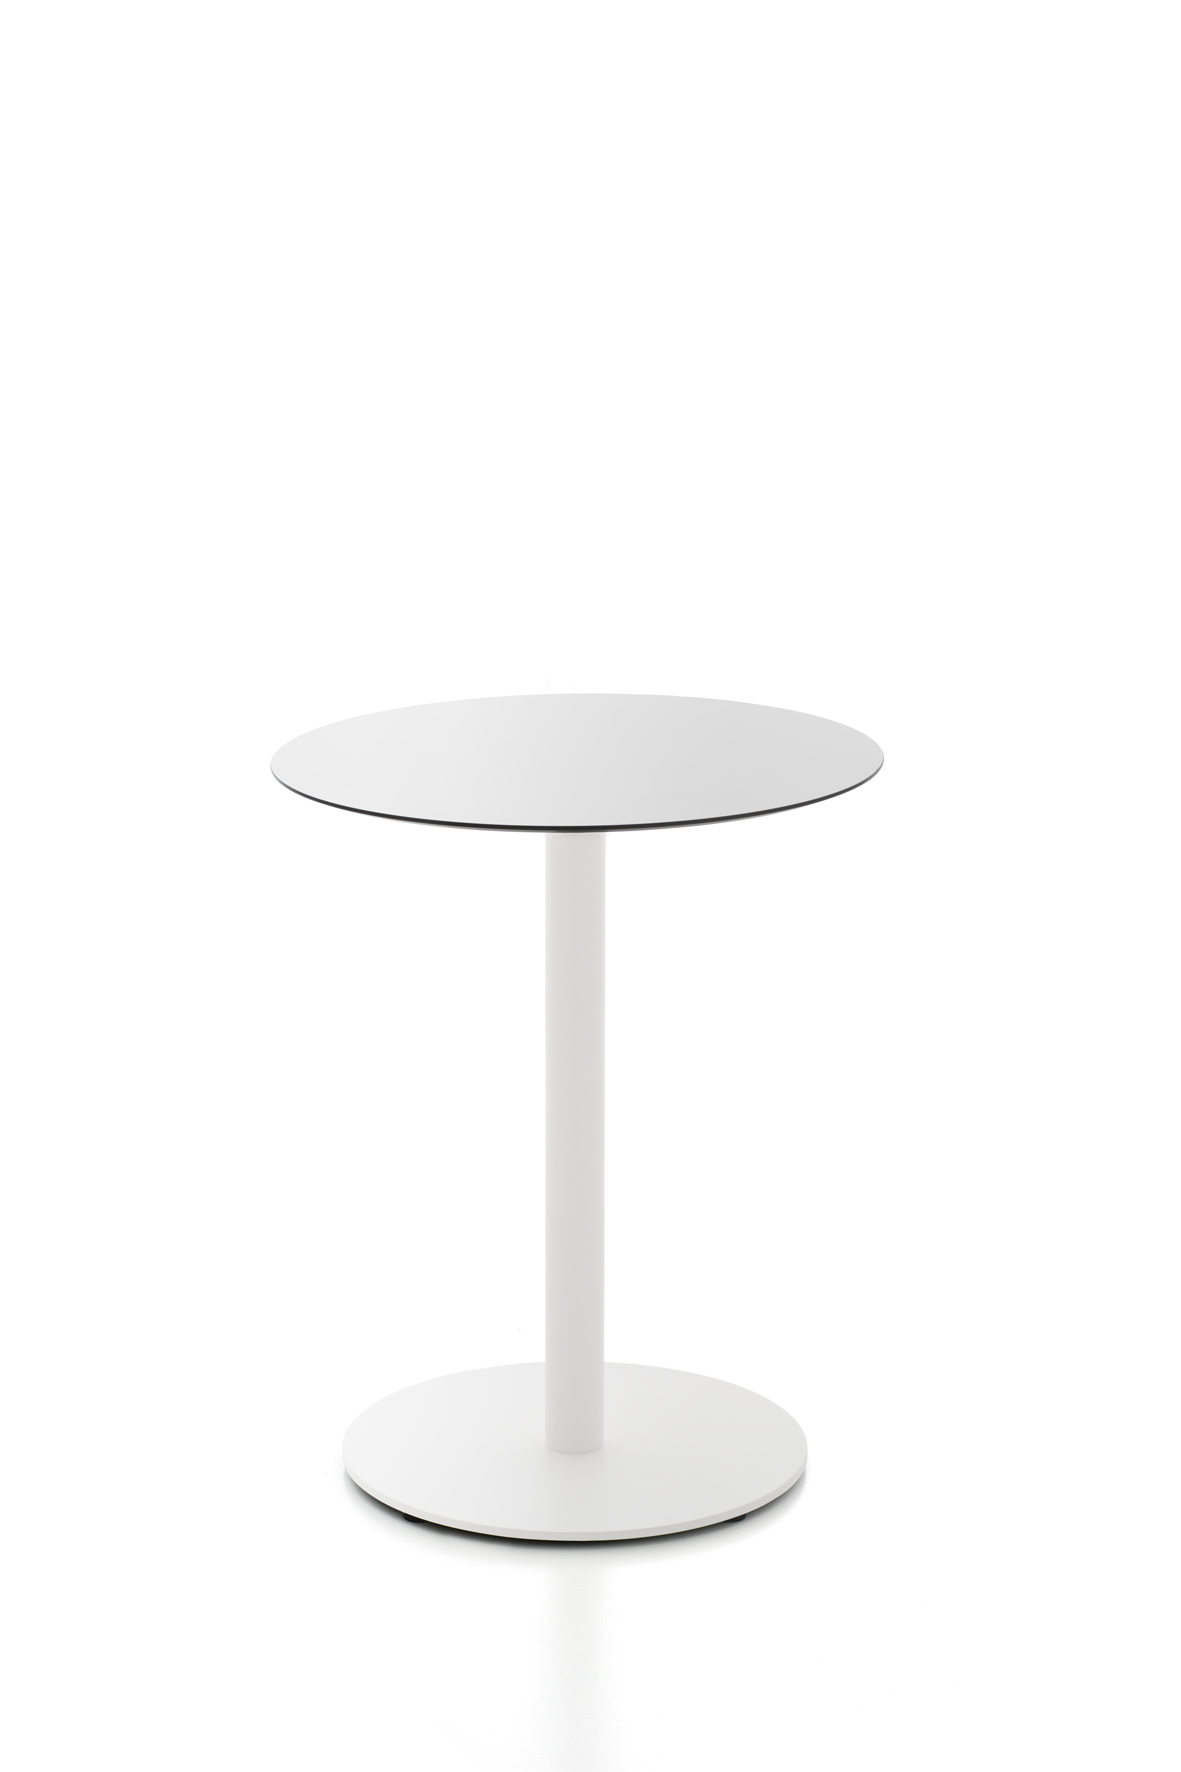 Tisch Kaleox, Basisversion; <br>runde Tischplatte  60 cm, wei; <br>Gestell wei lackiert; Tischhhe 74 cm